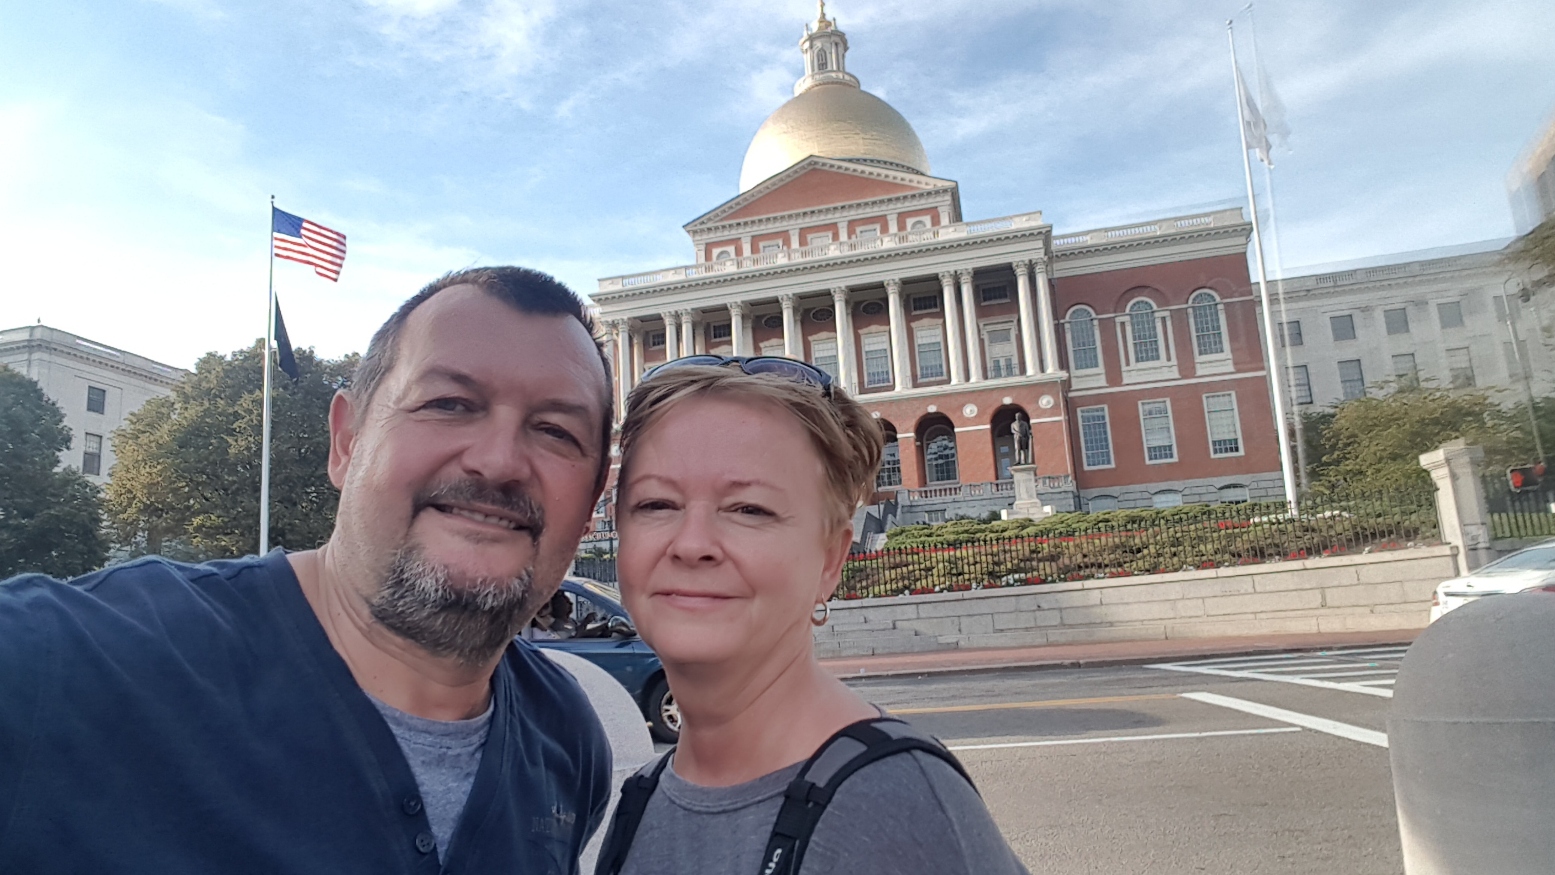 Mögöttünk Massachusetts kormányzósági épülete. A kupolát először szürkére, majd halványsárgára festették, mielőtt 1874-ben bearanyozták.